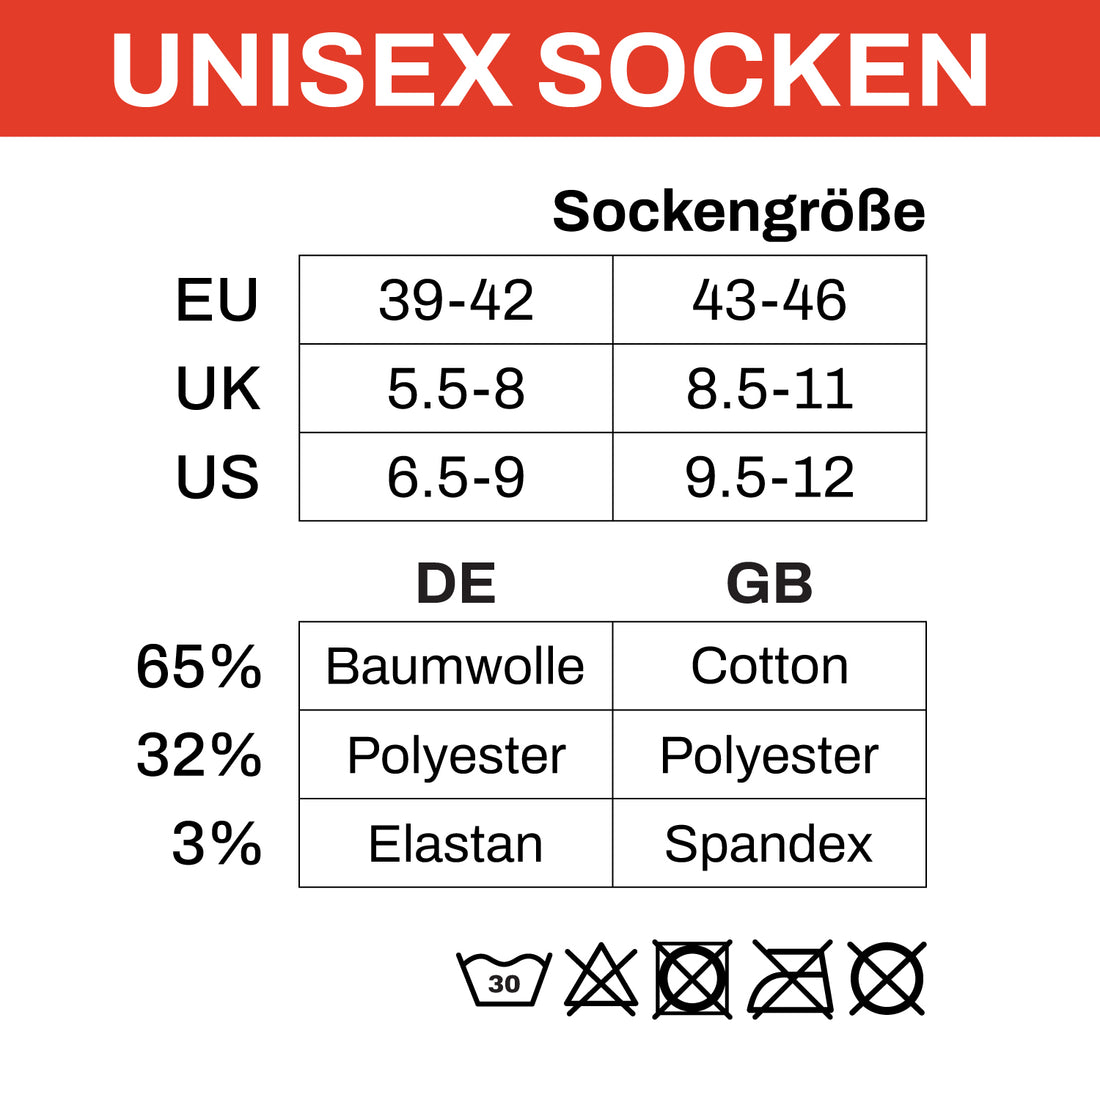 ChiliLifestyle Unisex Tennis Socken weiß 9er